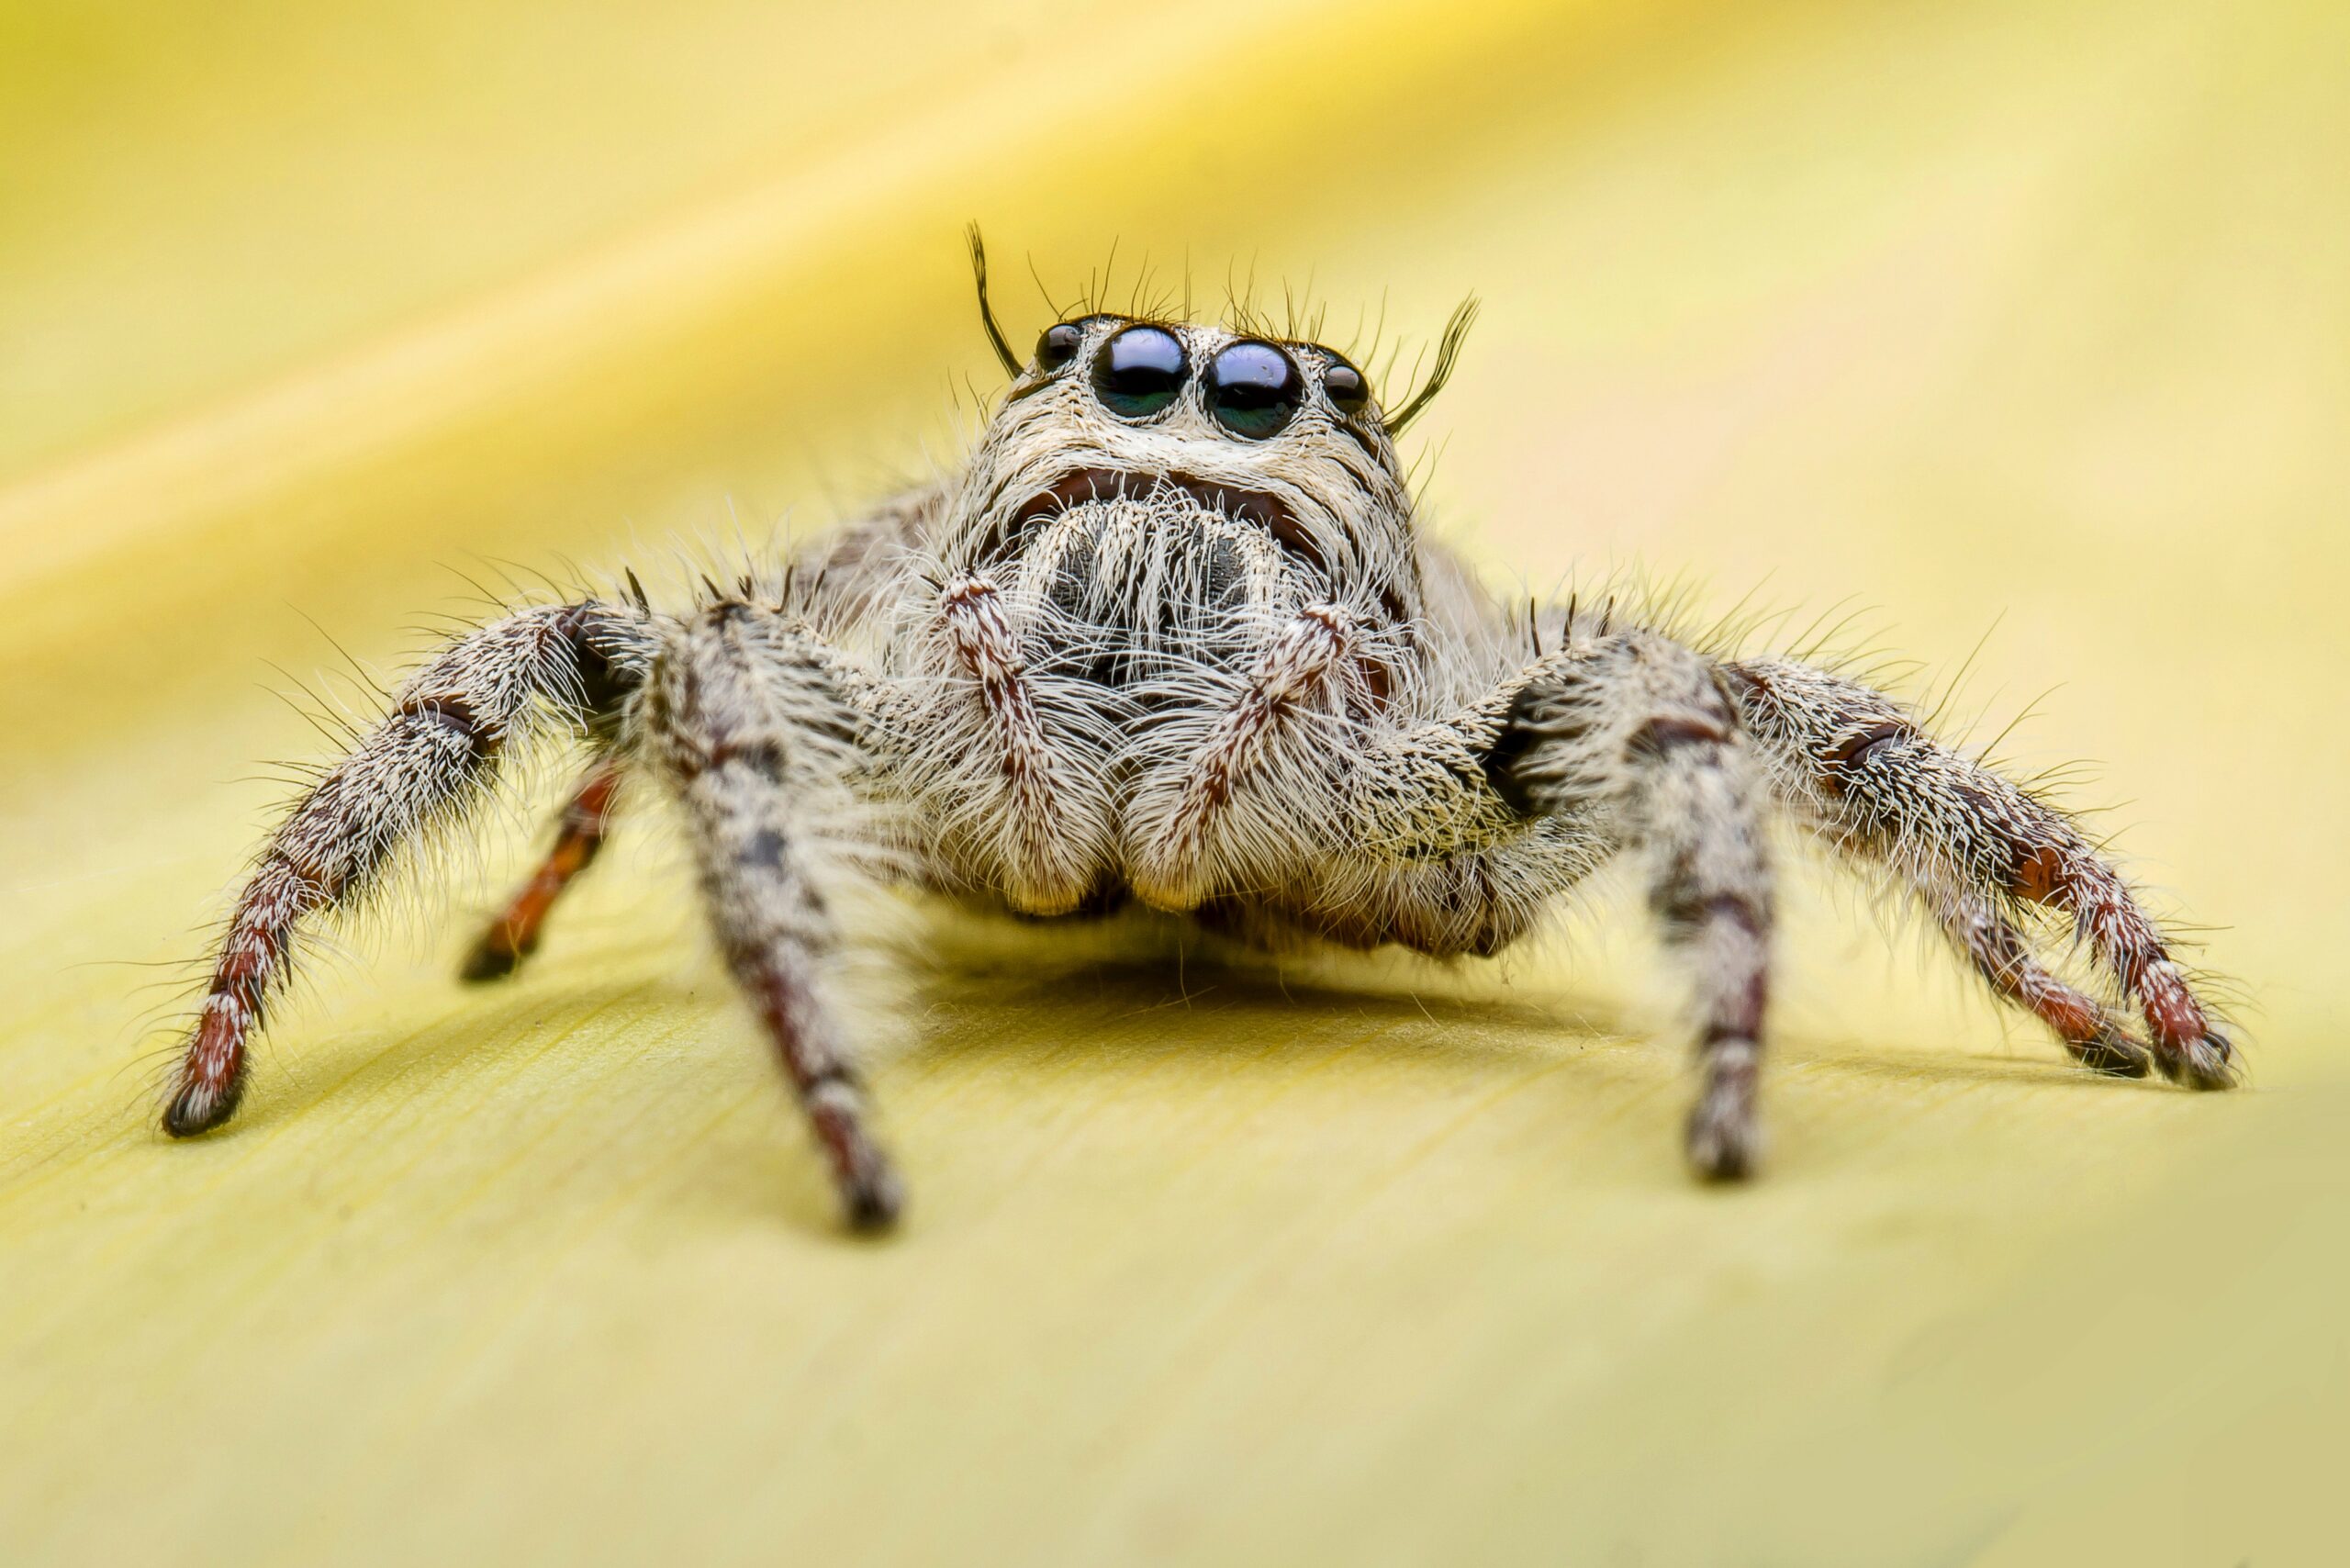 What is arachnophobia?